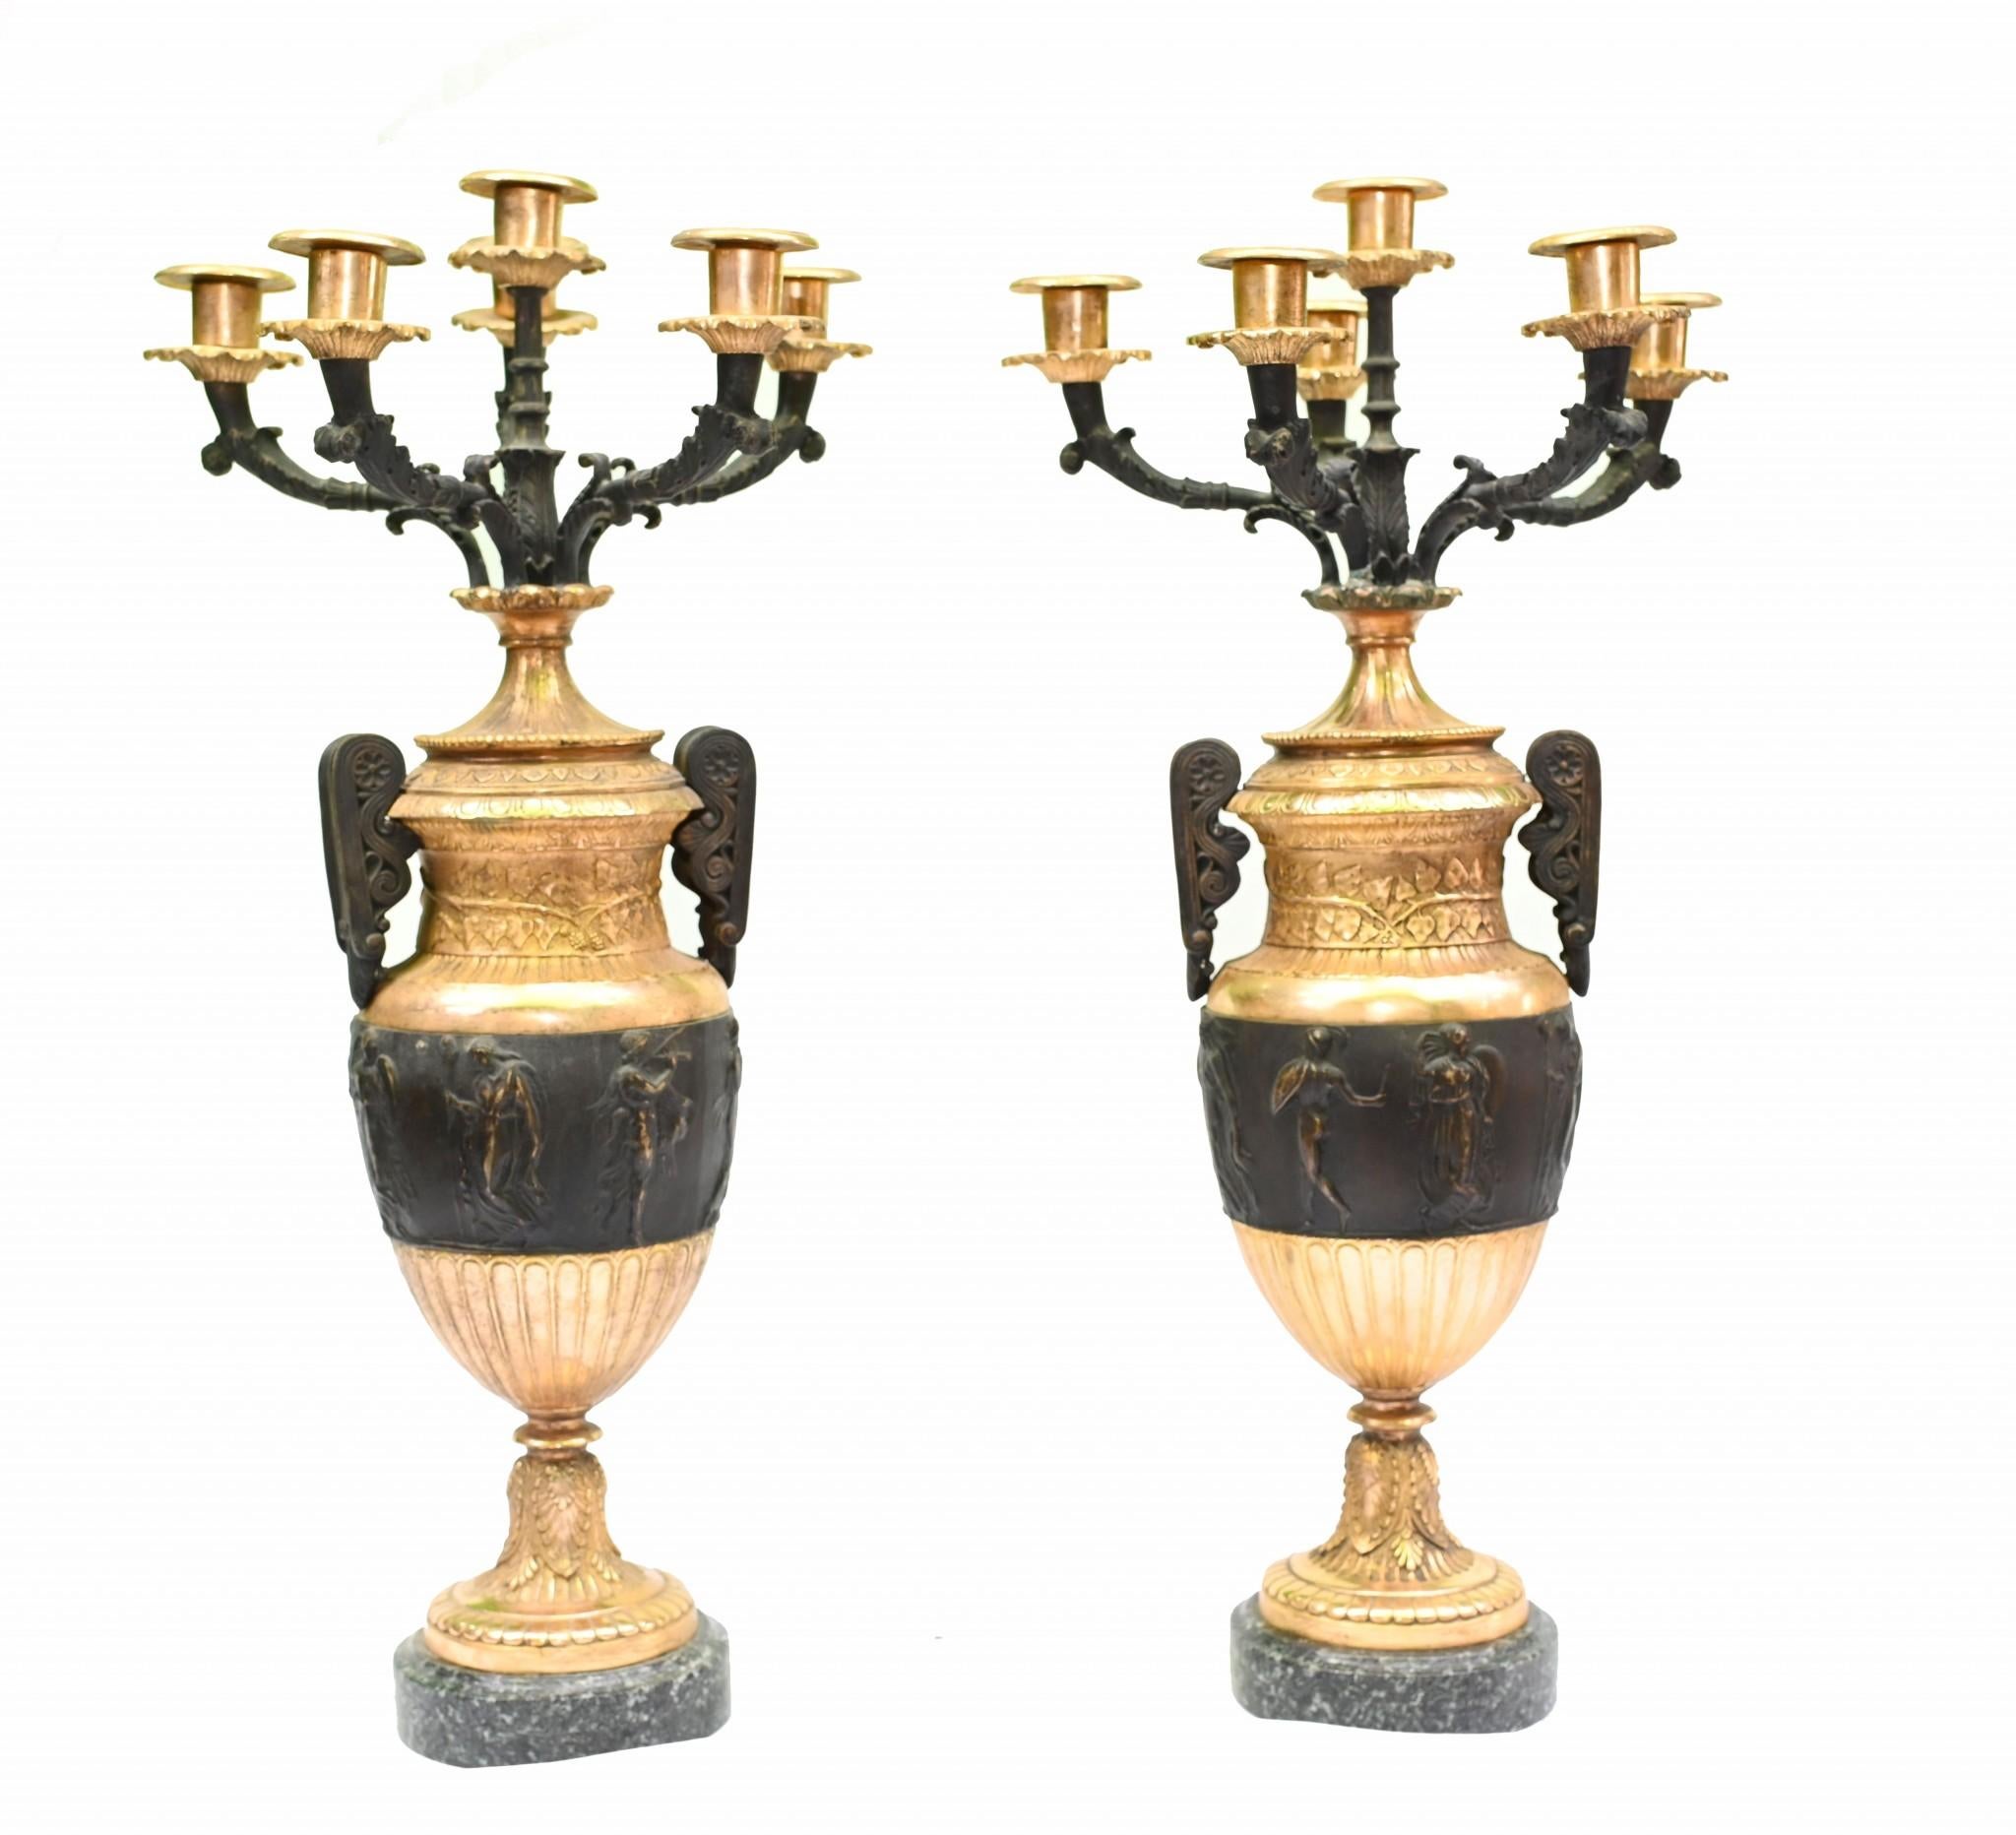 Sie sehen ein Paar antike vergoldete und bronzene Urnen in der Art von Thomas Hope
Der Look ist High Regency mit einem schillernden Farbspiel zwischen Schwarz und Gold.
Es handelt sich um klassische Amphora-Urnen - griechische Wiedergeburt - mit